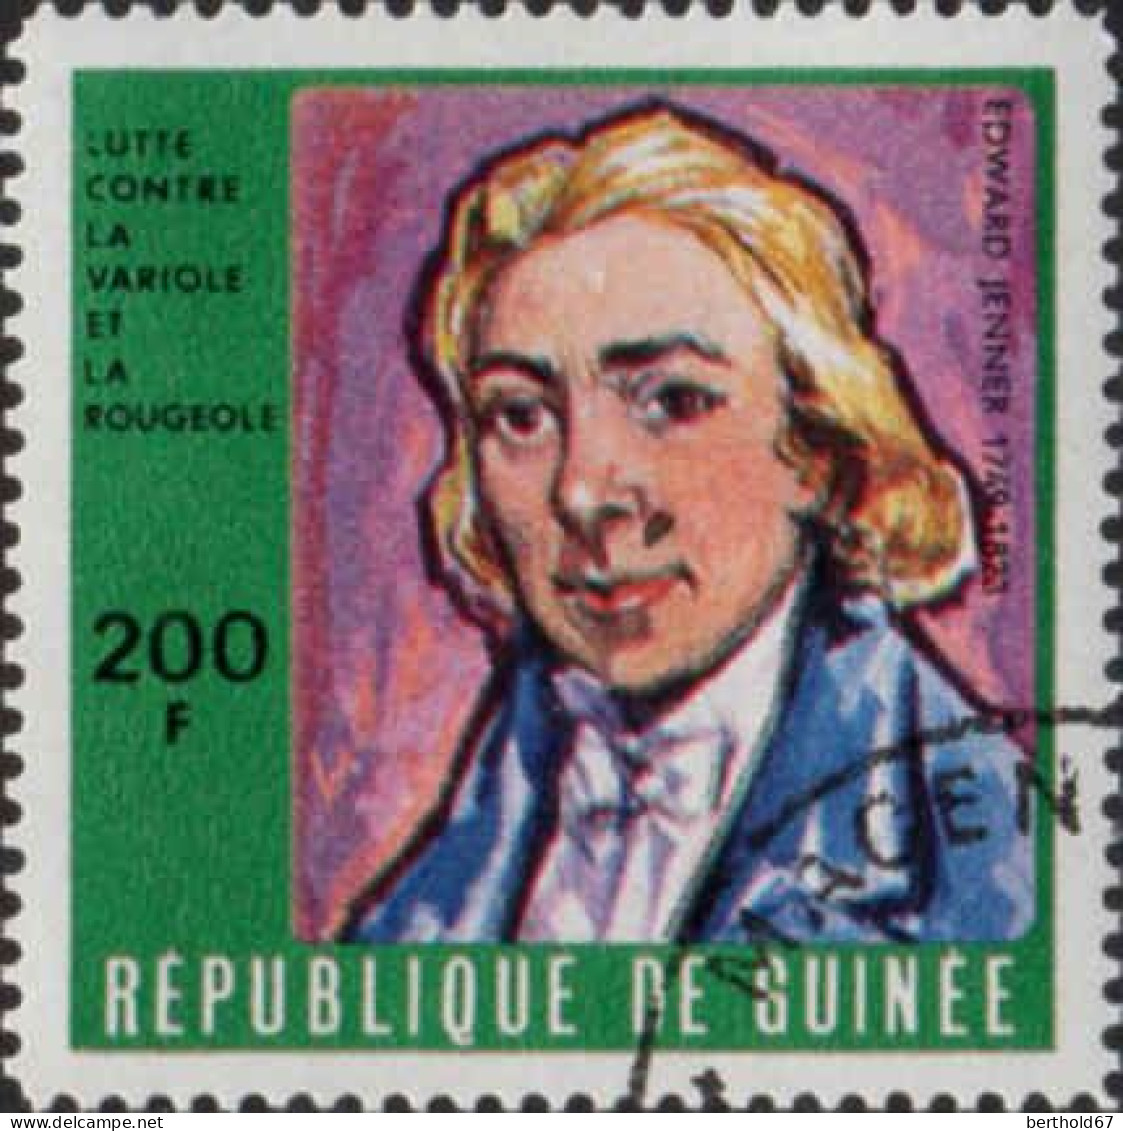 Guinée (Rep) Poste Obl Yv: 410/415 Lutte Contre La Variole Et La Rougeole (Beau Cachet Rond) - Guinea (1958-...)